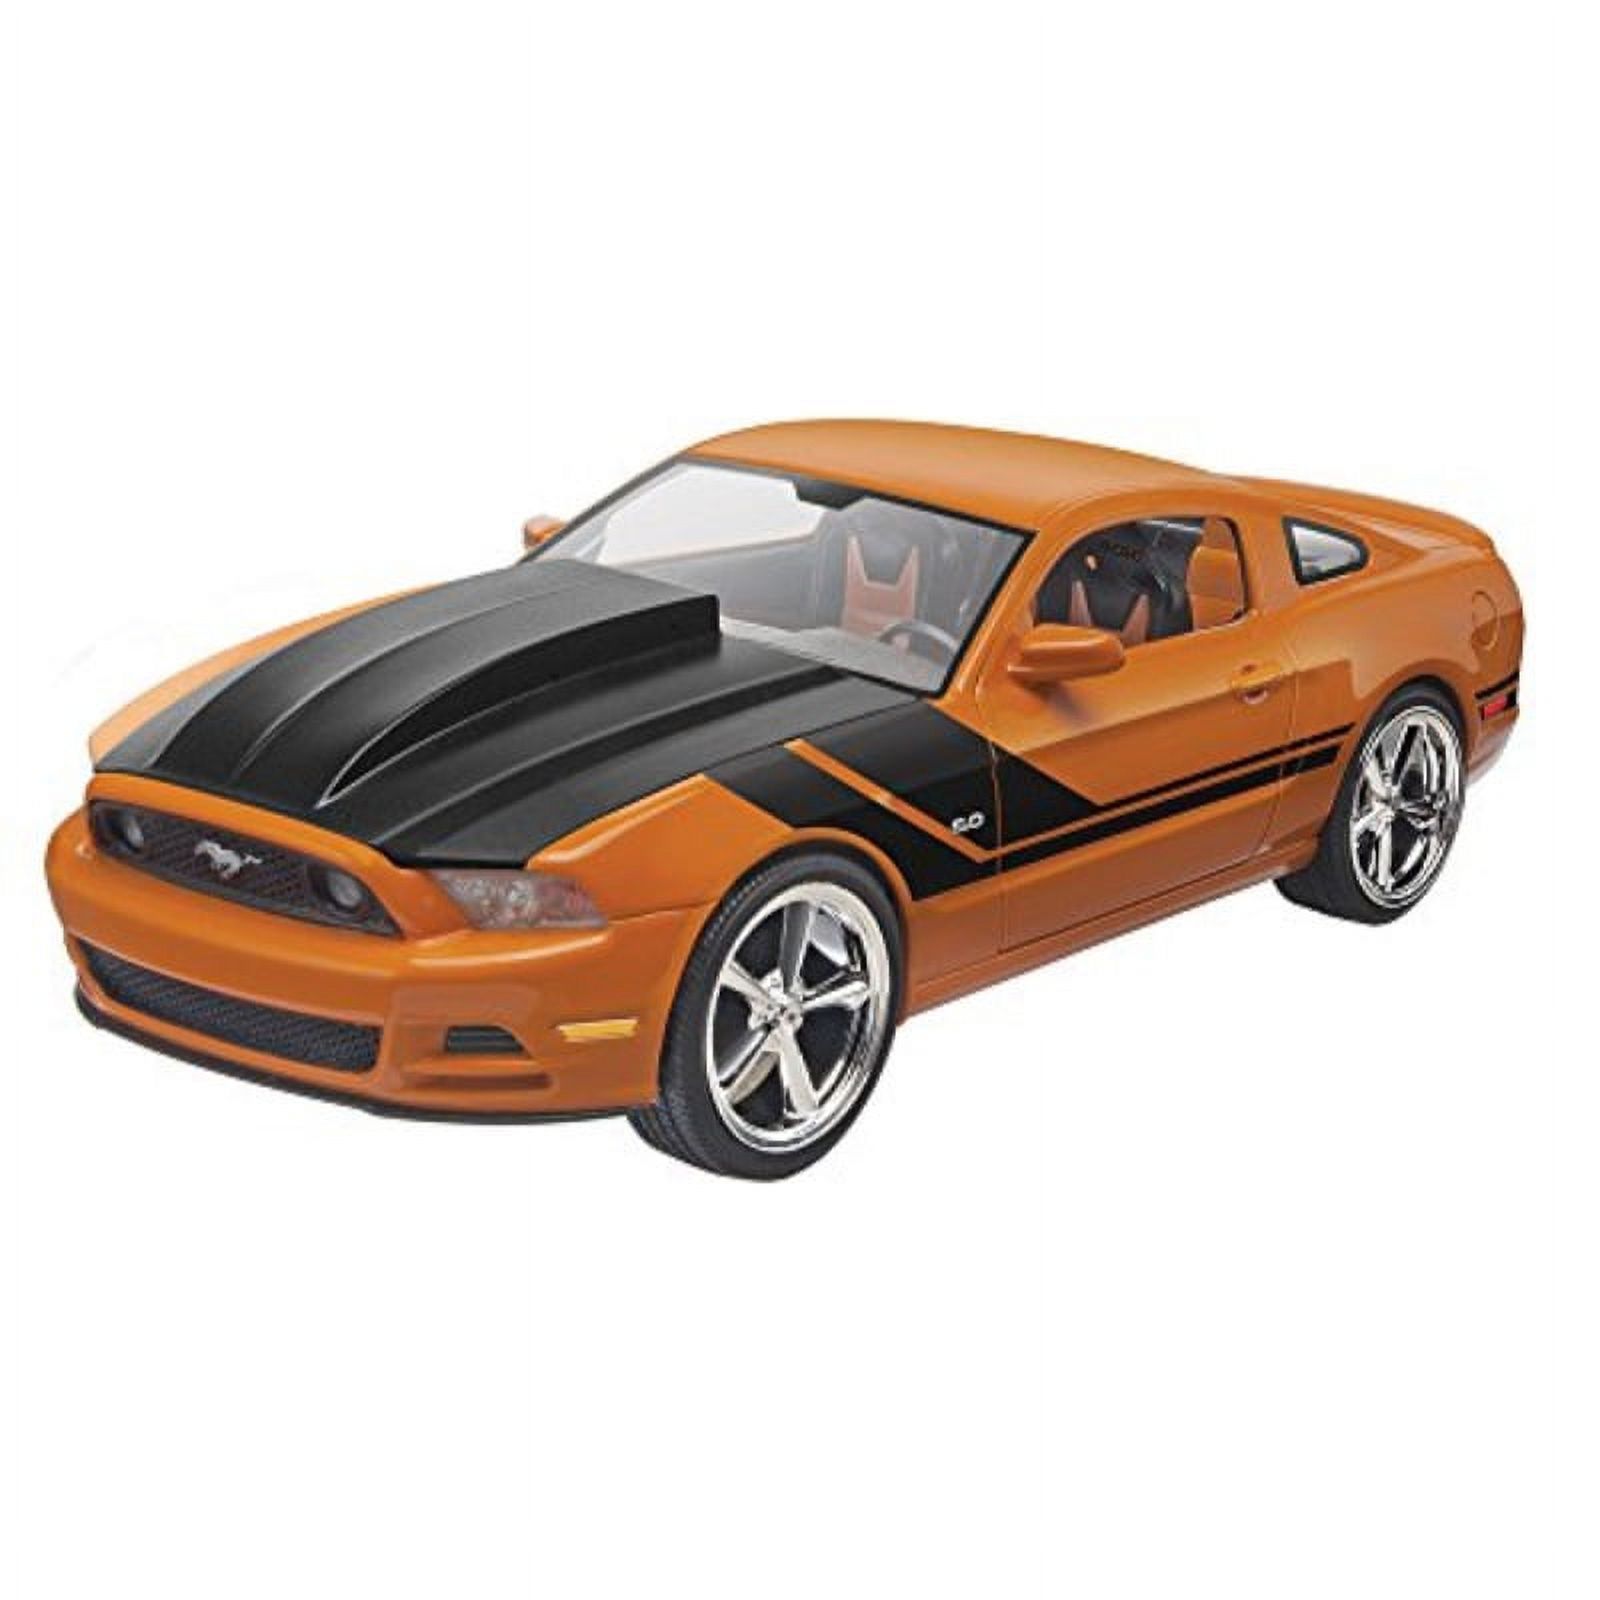 REVELL-MONOGRAM 2014 Mustang Gt Car Model Kit - image 1 of 2